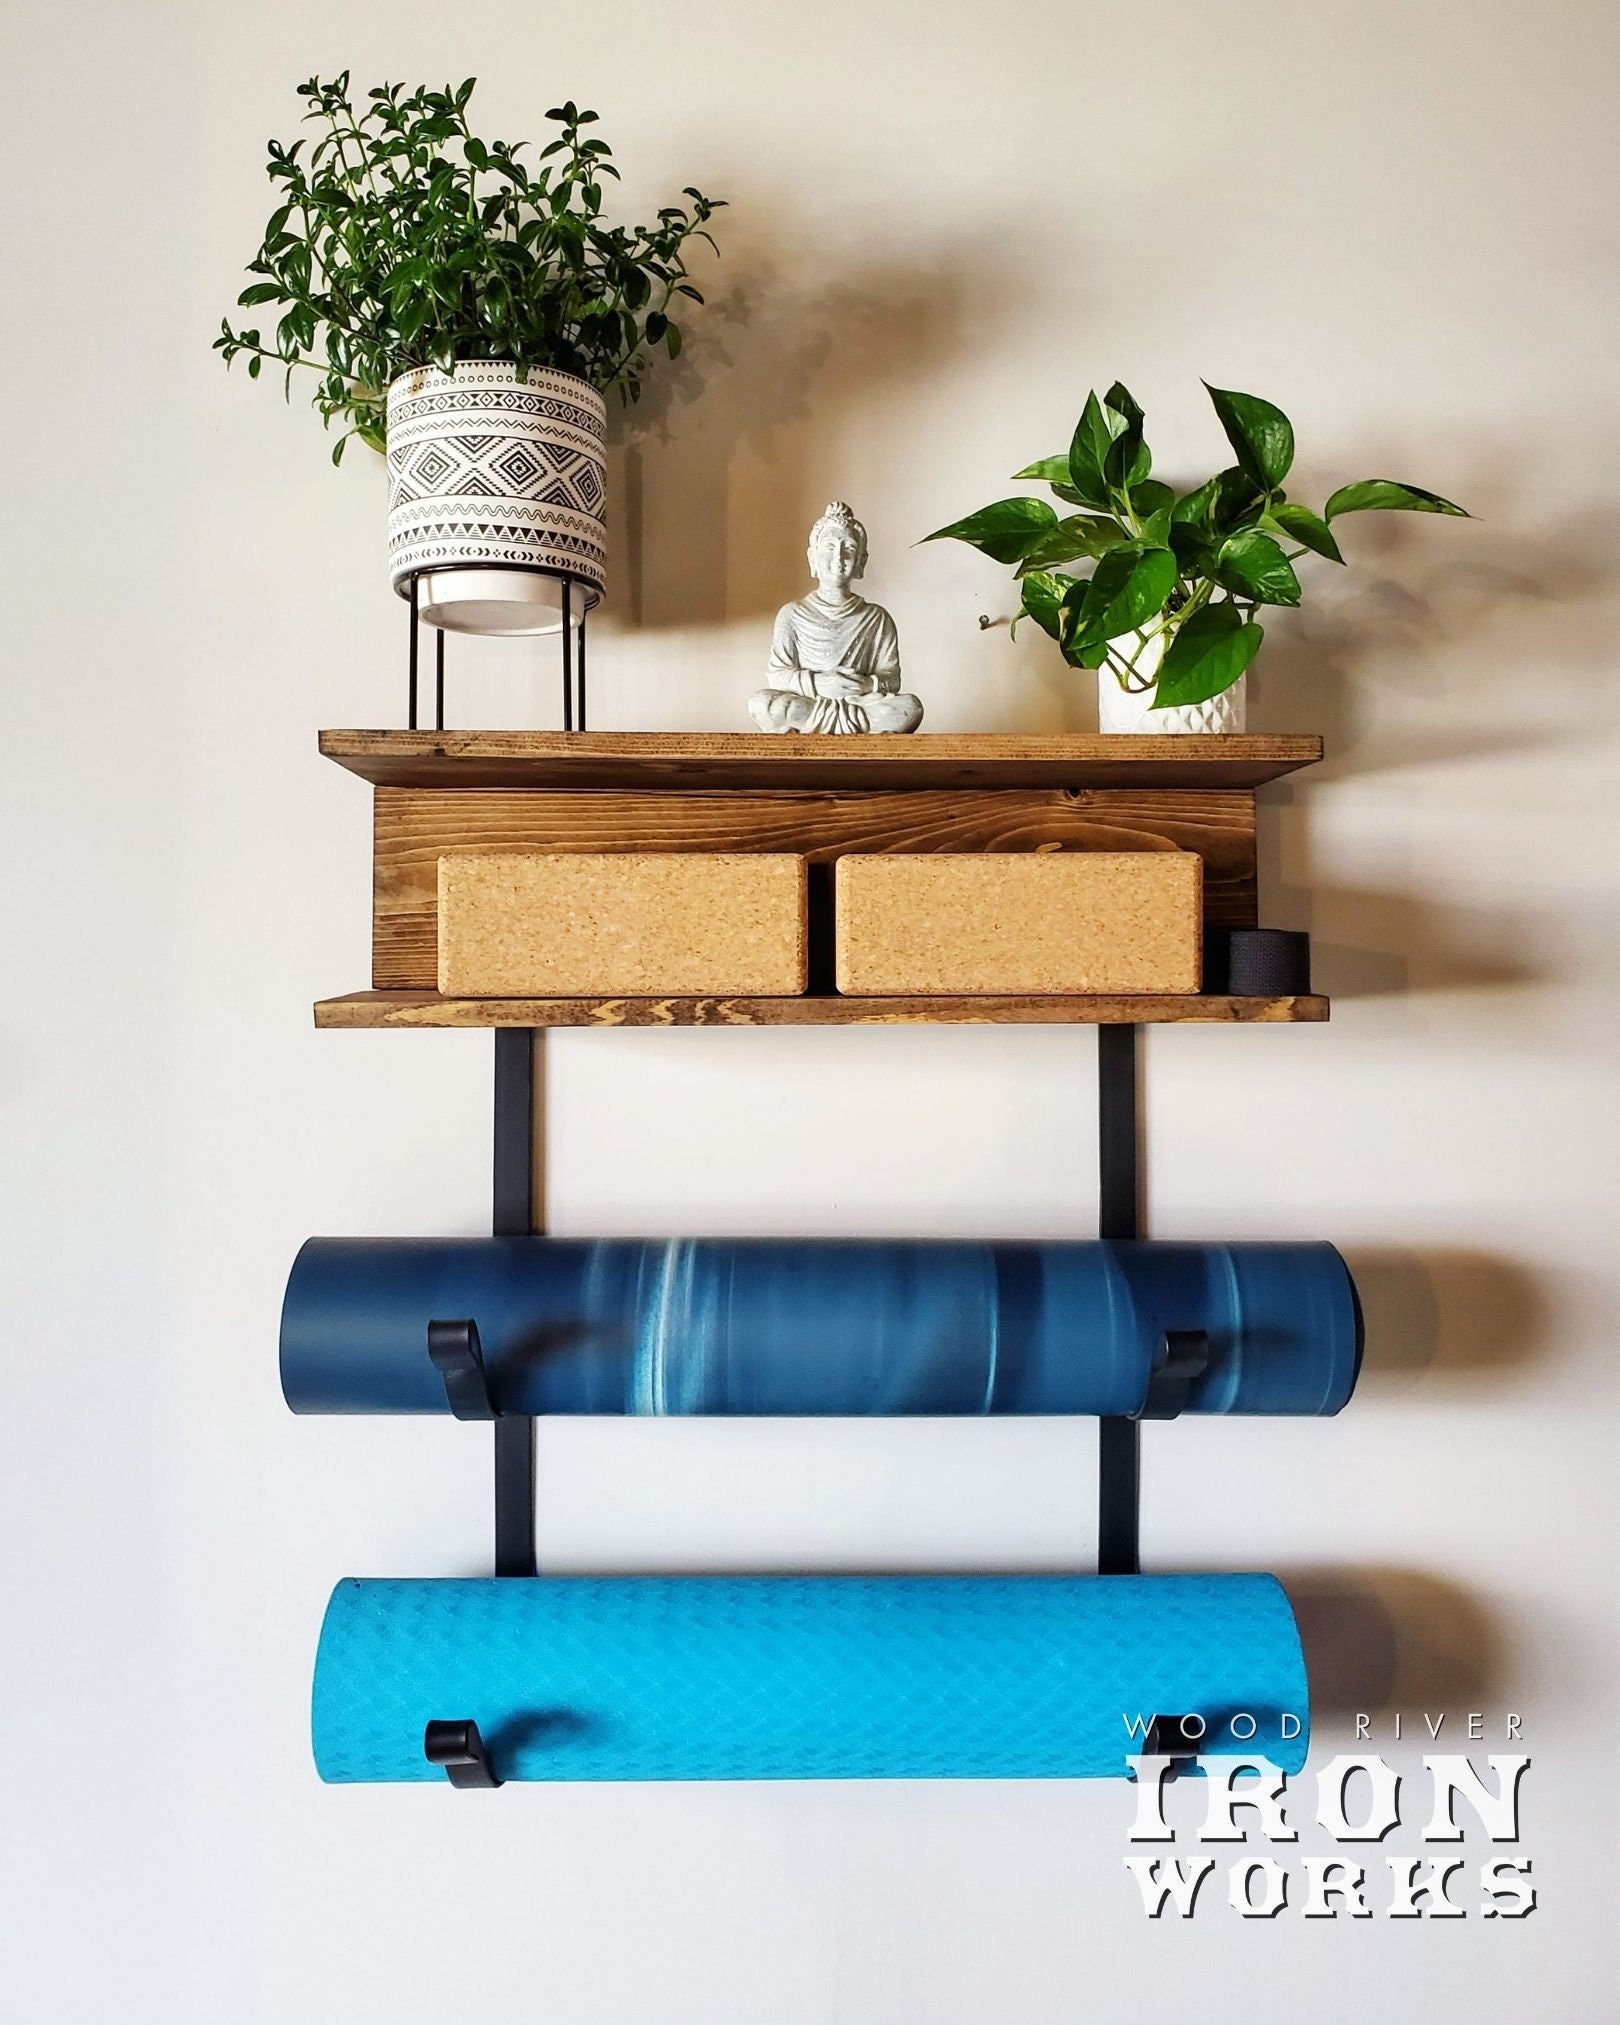 Yoga Mat Holder Shelves -   Home yoga room, Zen room decor